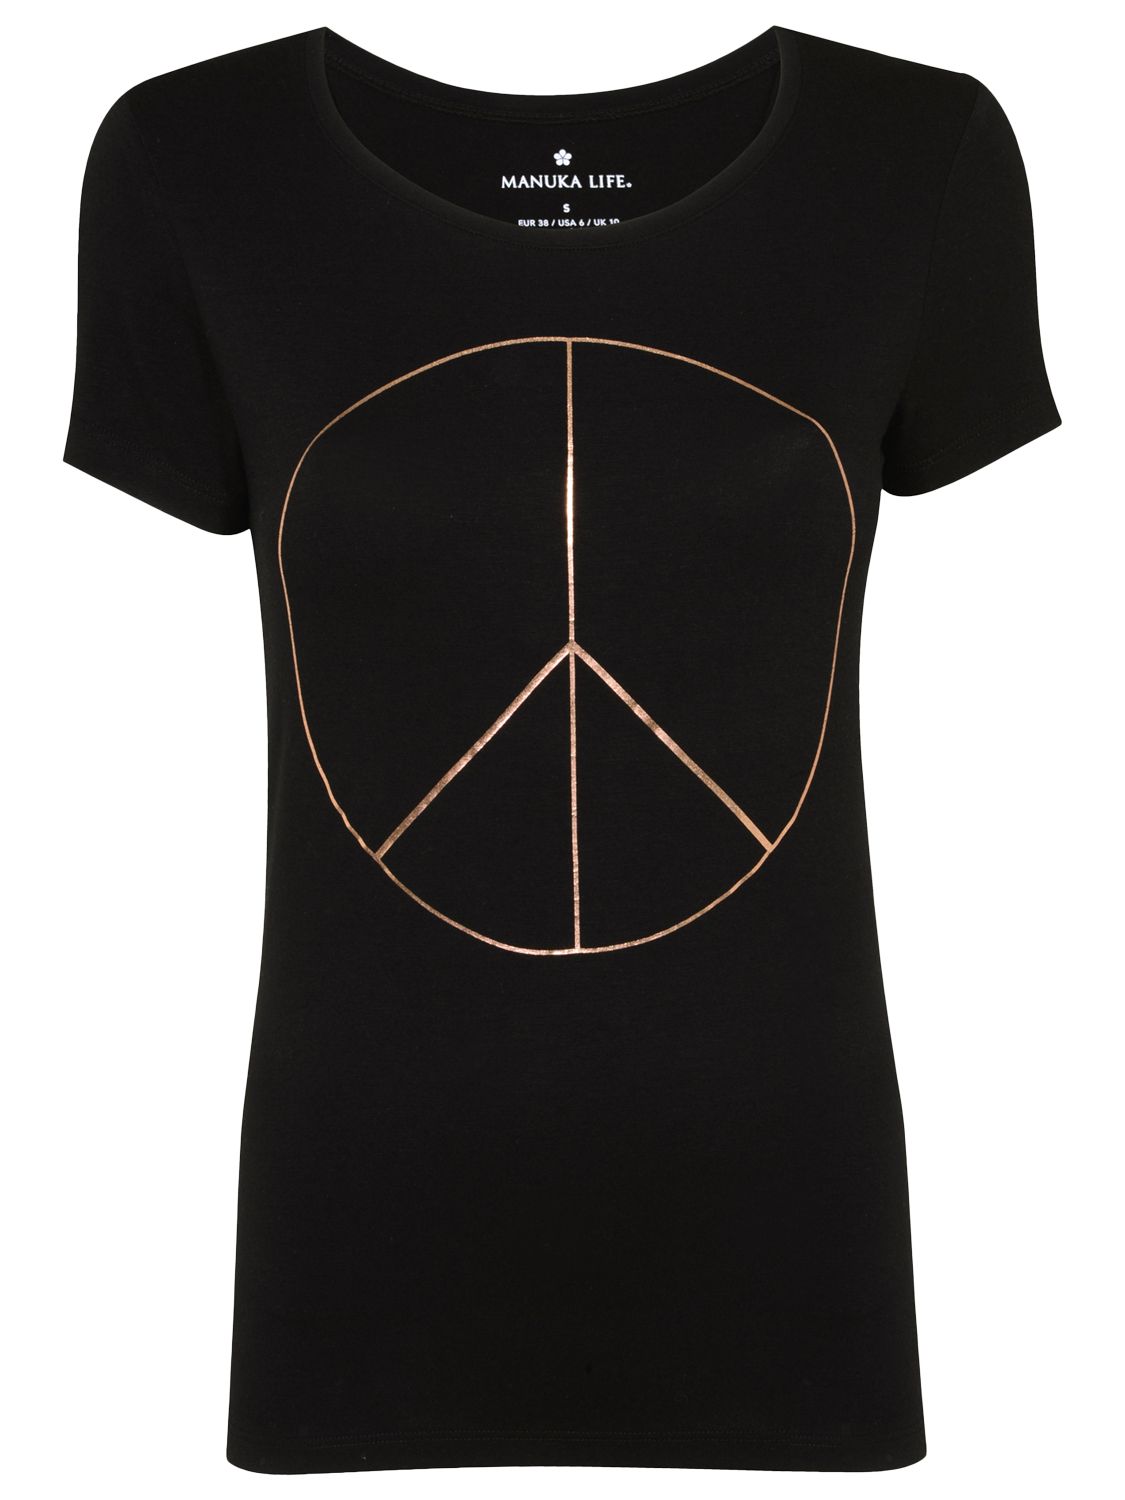 Manuka Peace Out Yoga T-Shirt, Black, M